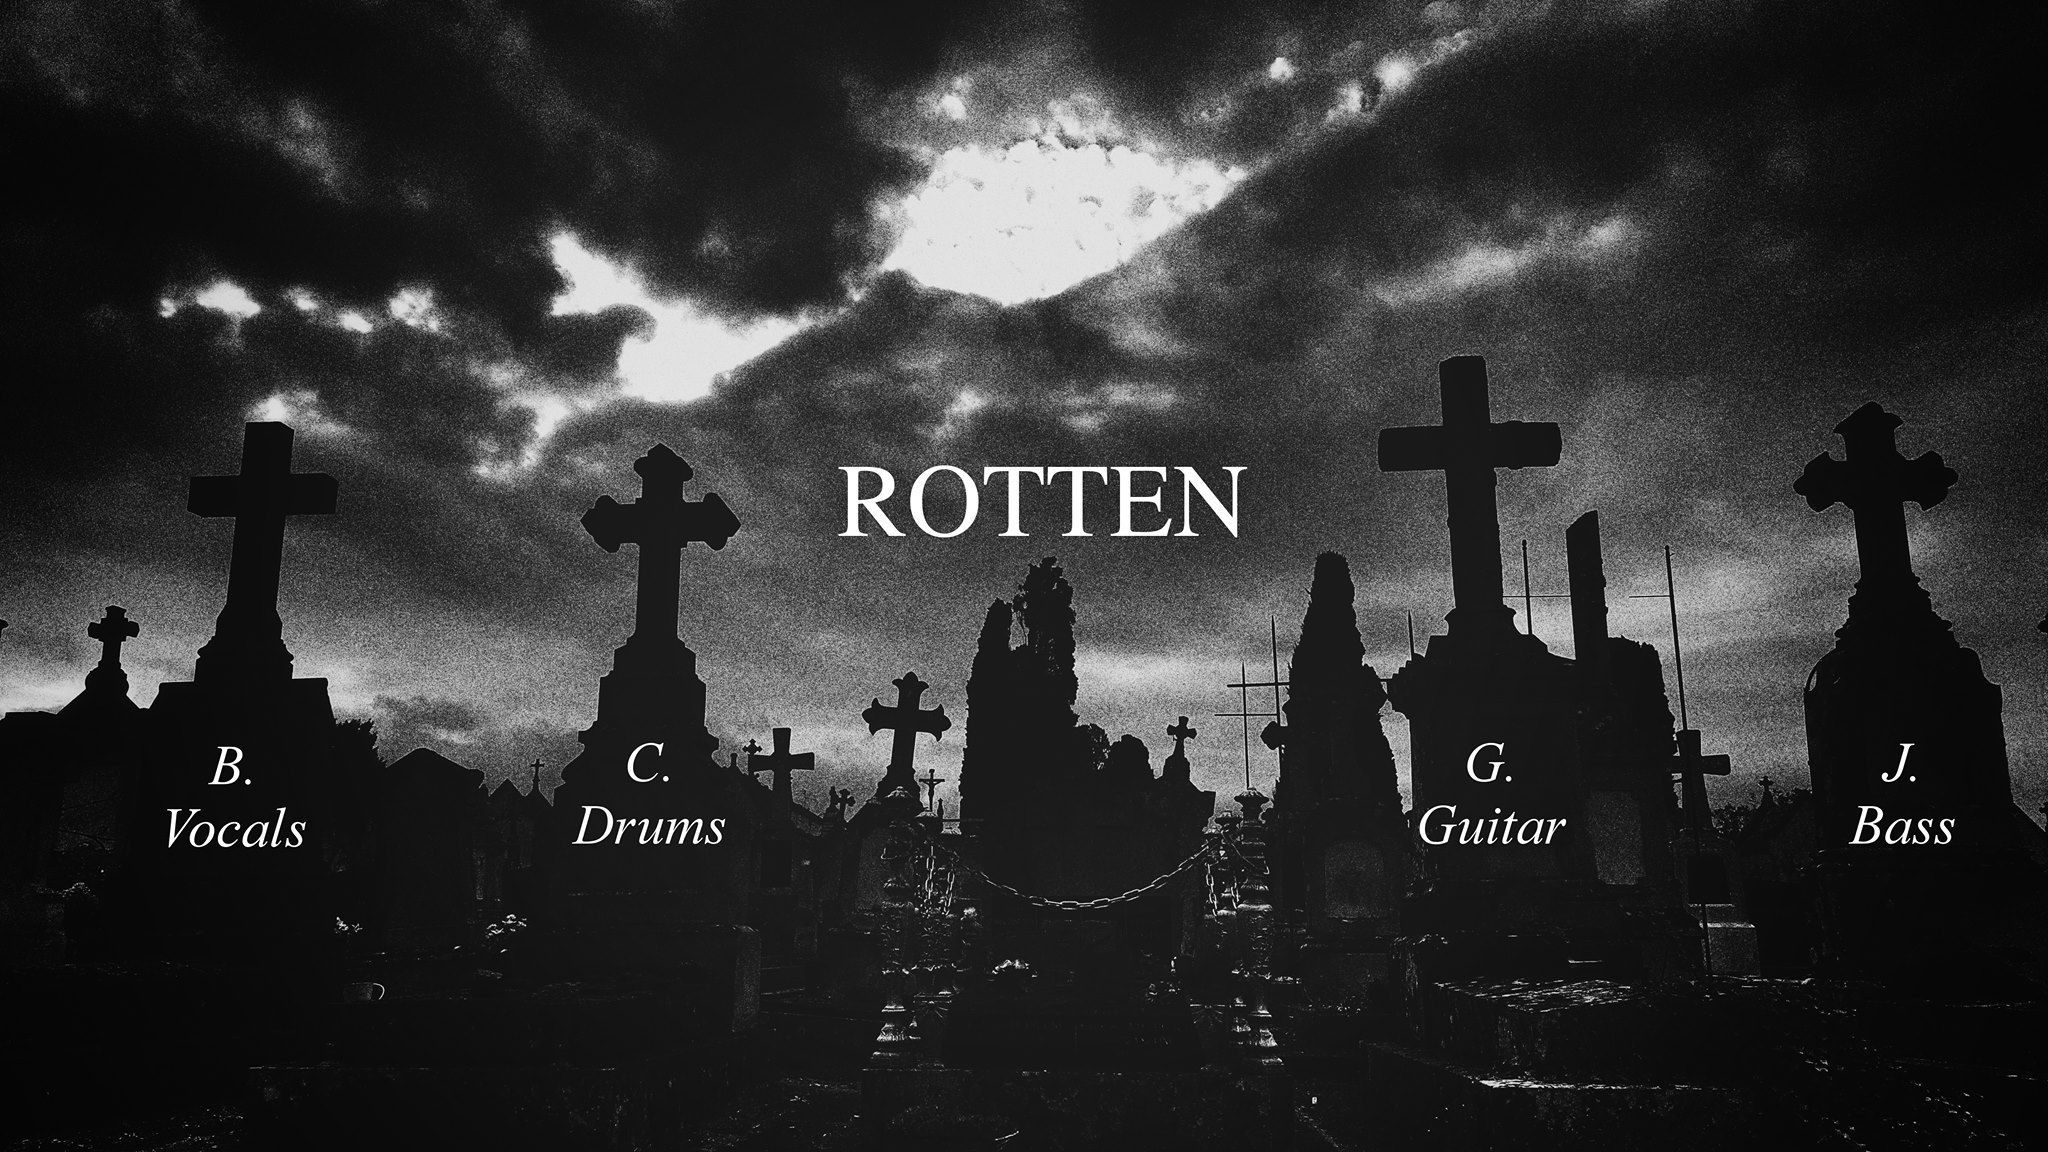 Rotten band